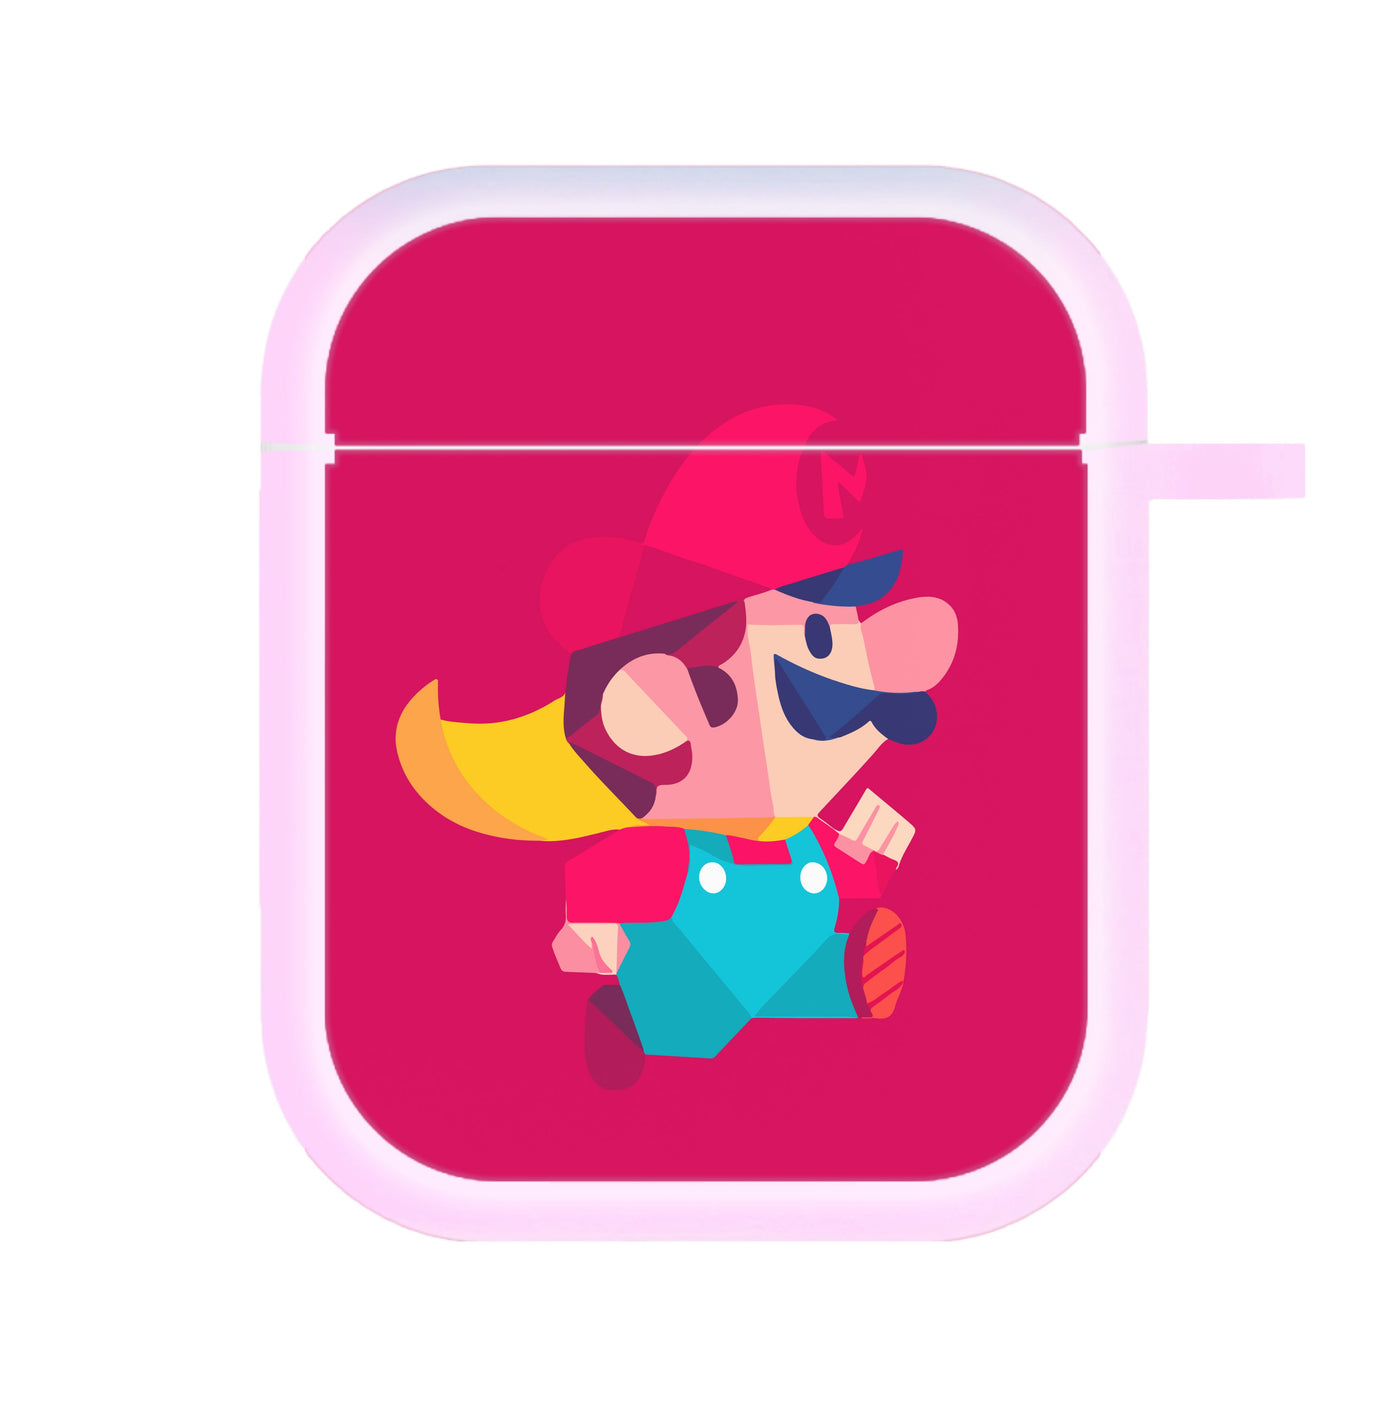 Running Mario - Mario AirPods Case